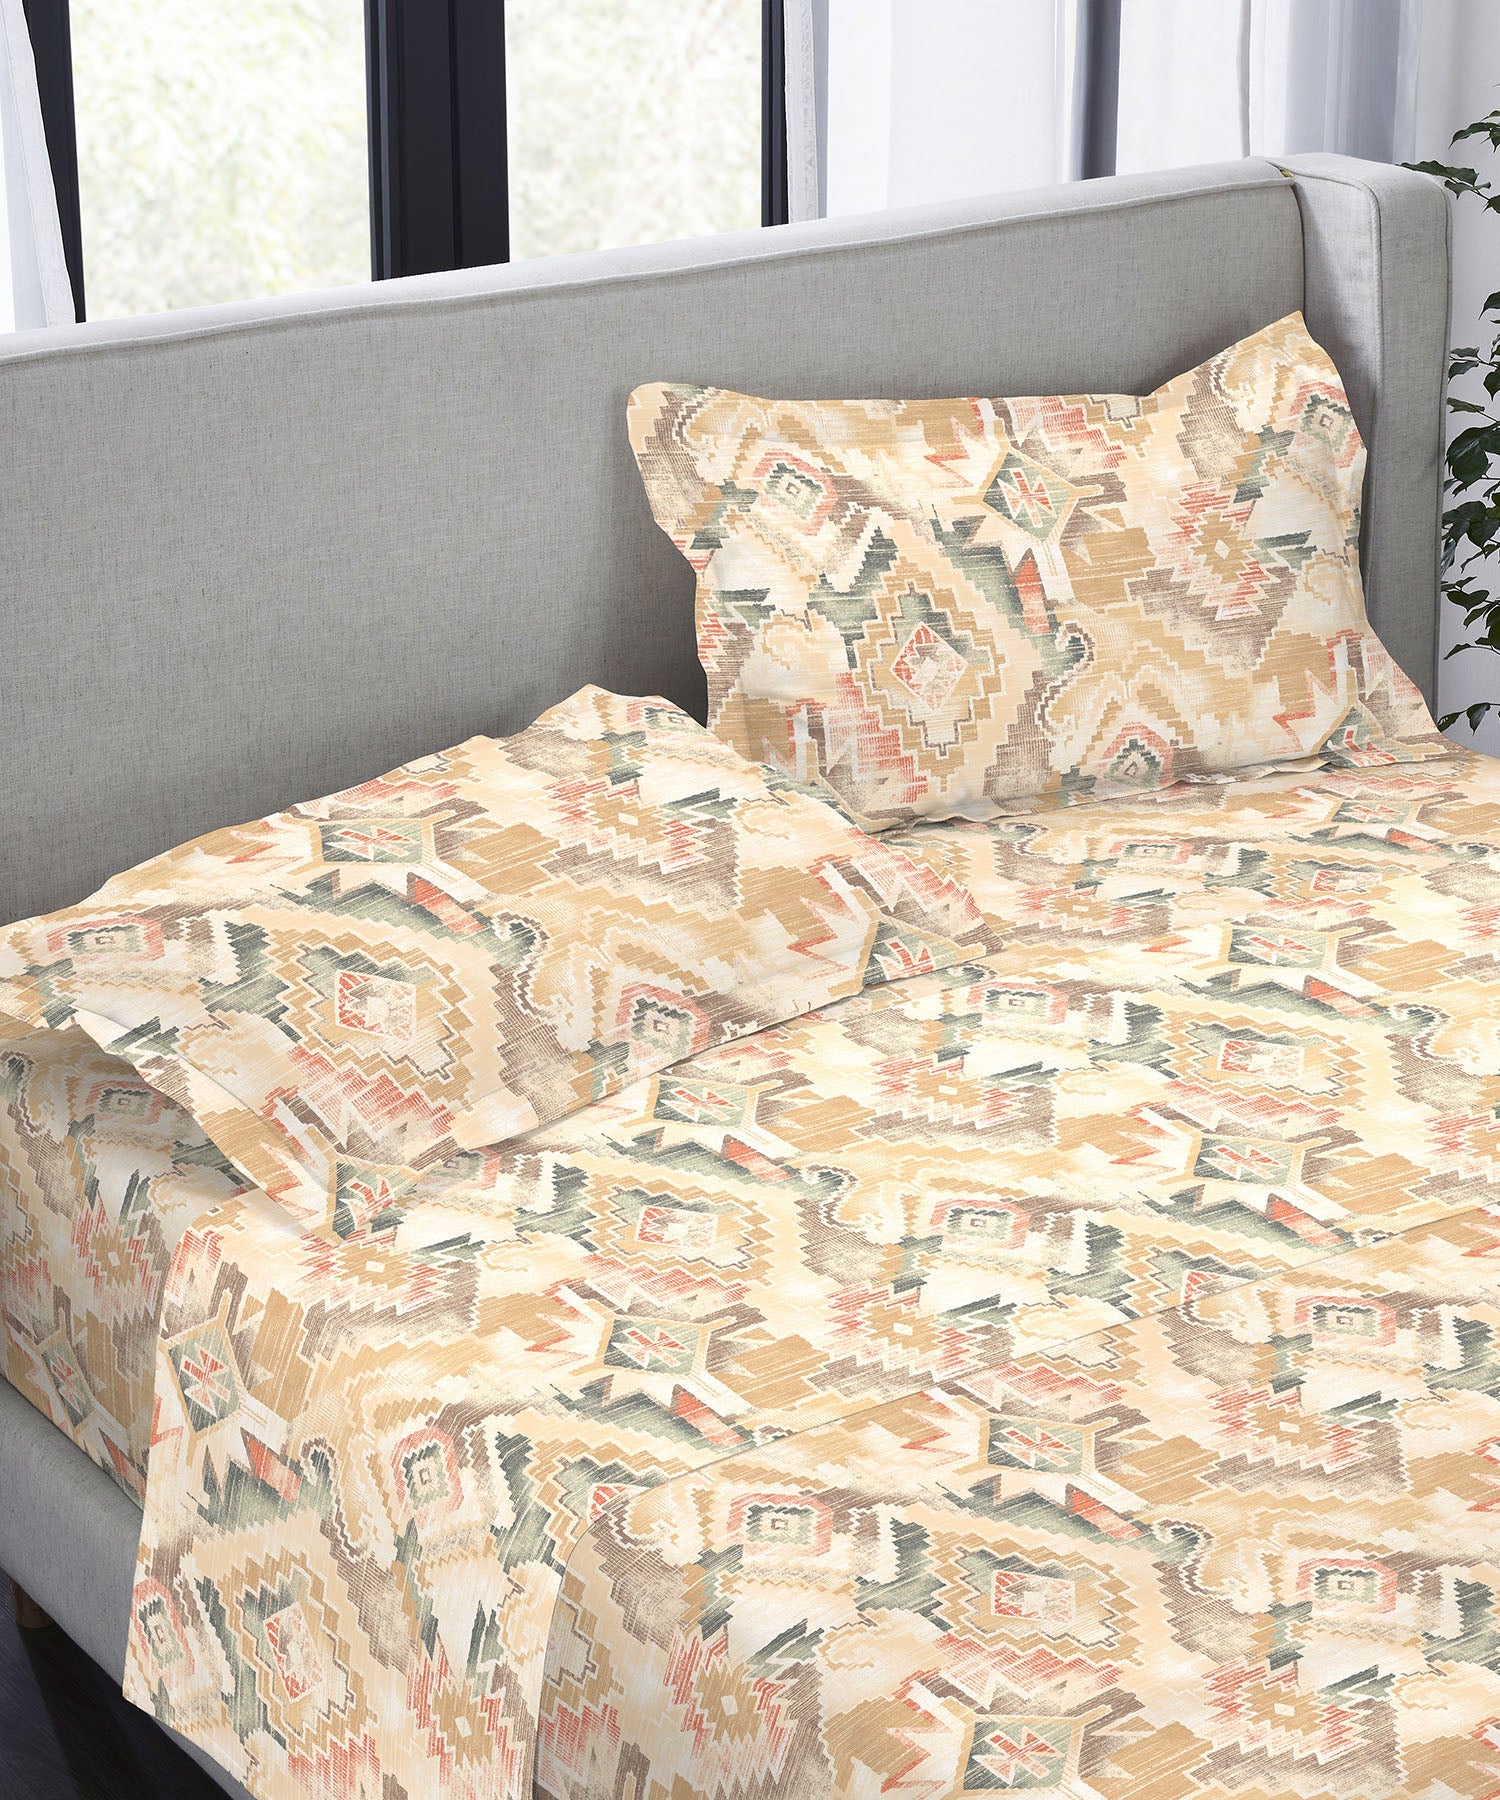 King Bedsheet ₹3199/-